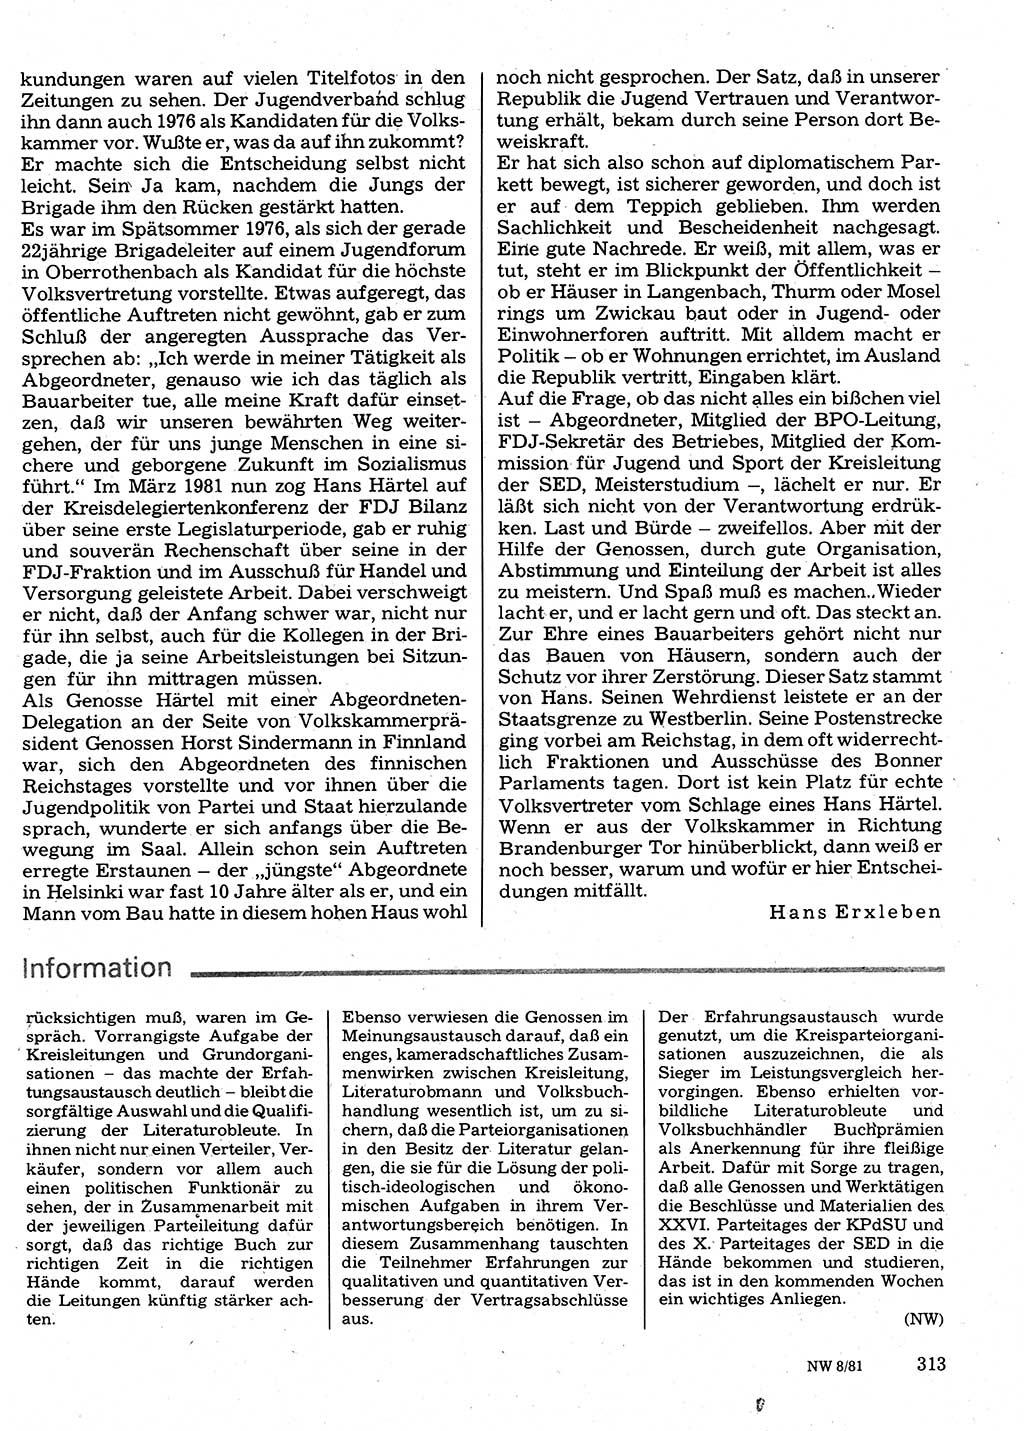 Neuer Weg (NW), Organ des Zentralkomitees (ZK) der SED (Sozialistische Einheitspartei Deutschlands) für Fragen des Parteilebens, 36. Jahrgang [Deutsche Demokratische Republik (DDR)] 1981, Seite 313 (NW ZK SED DDR 1981, S. 313)